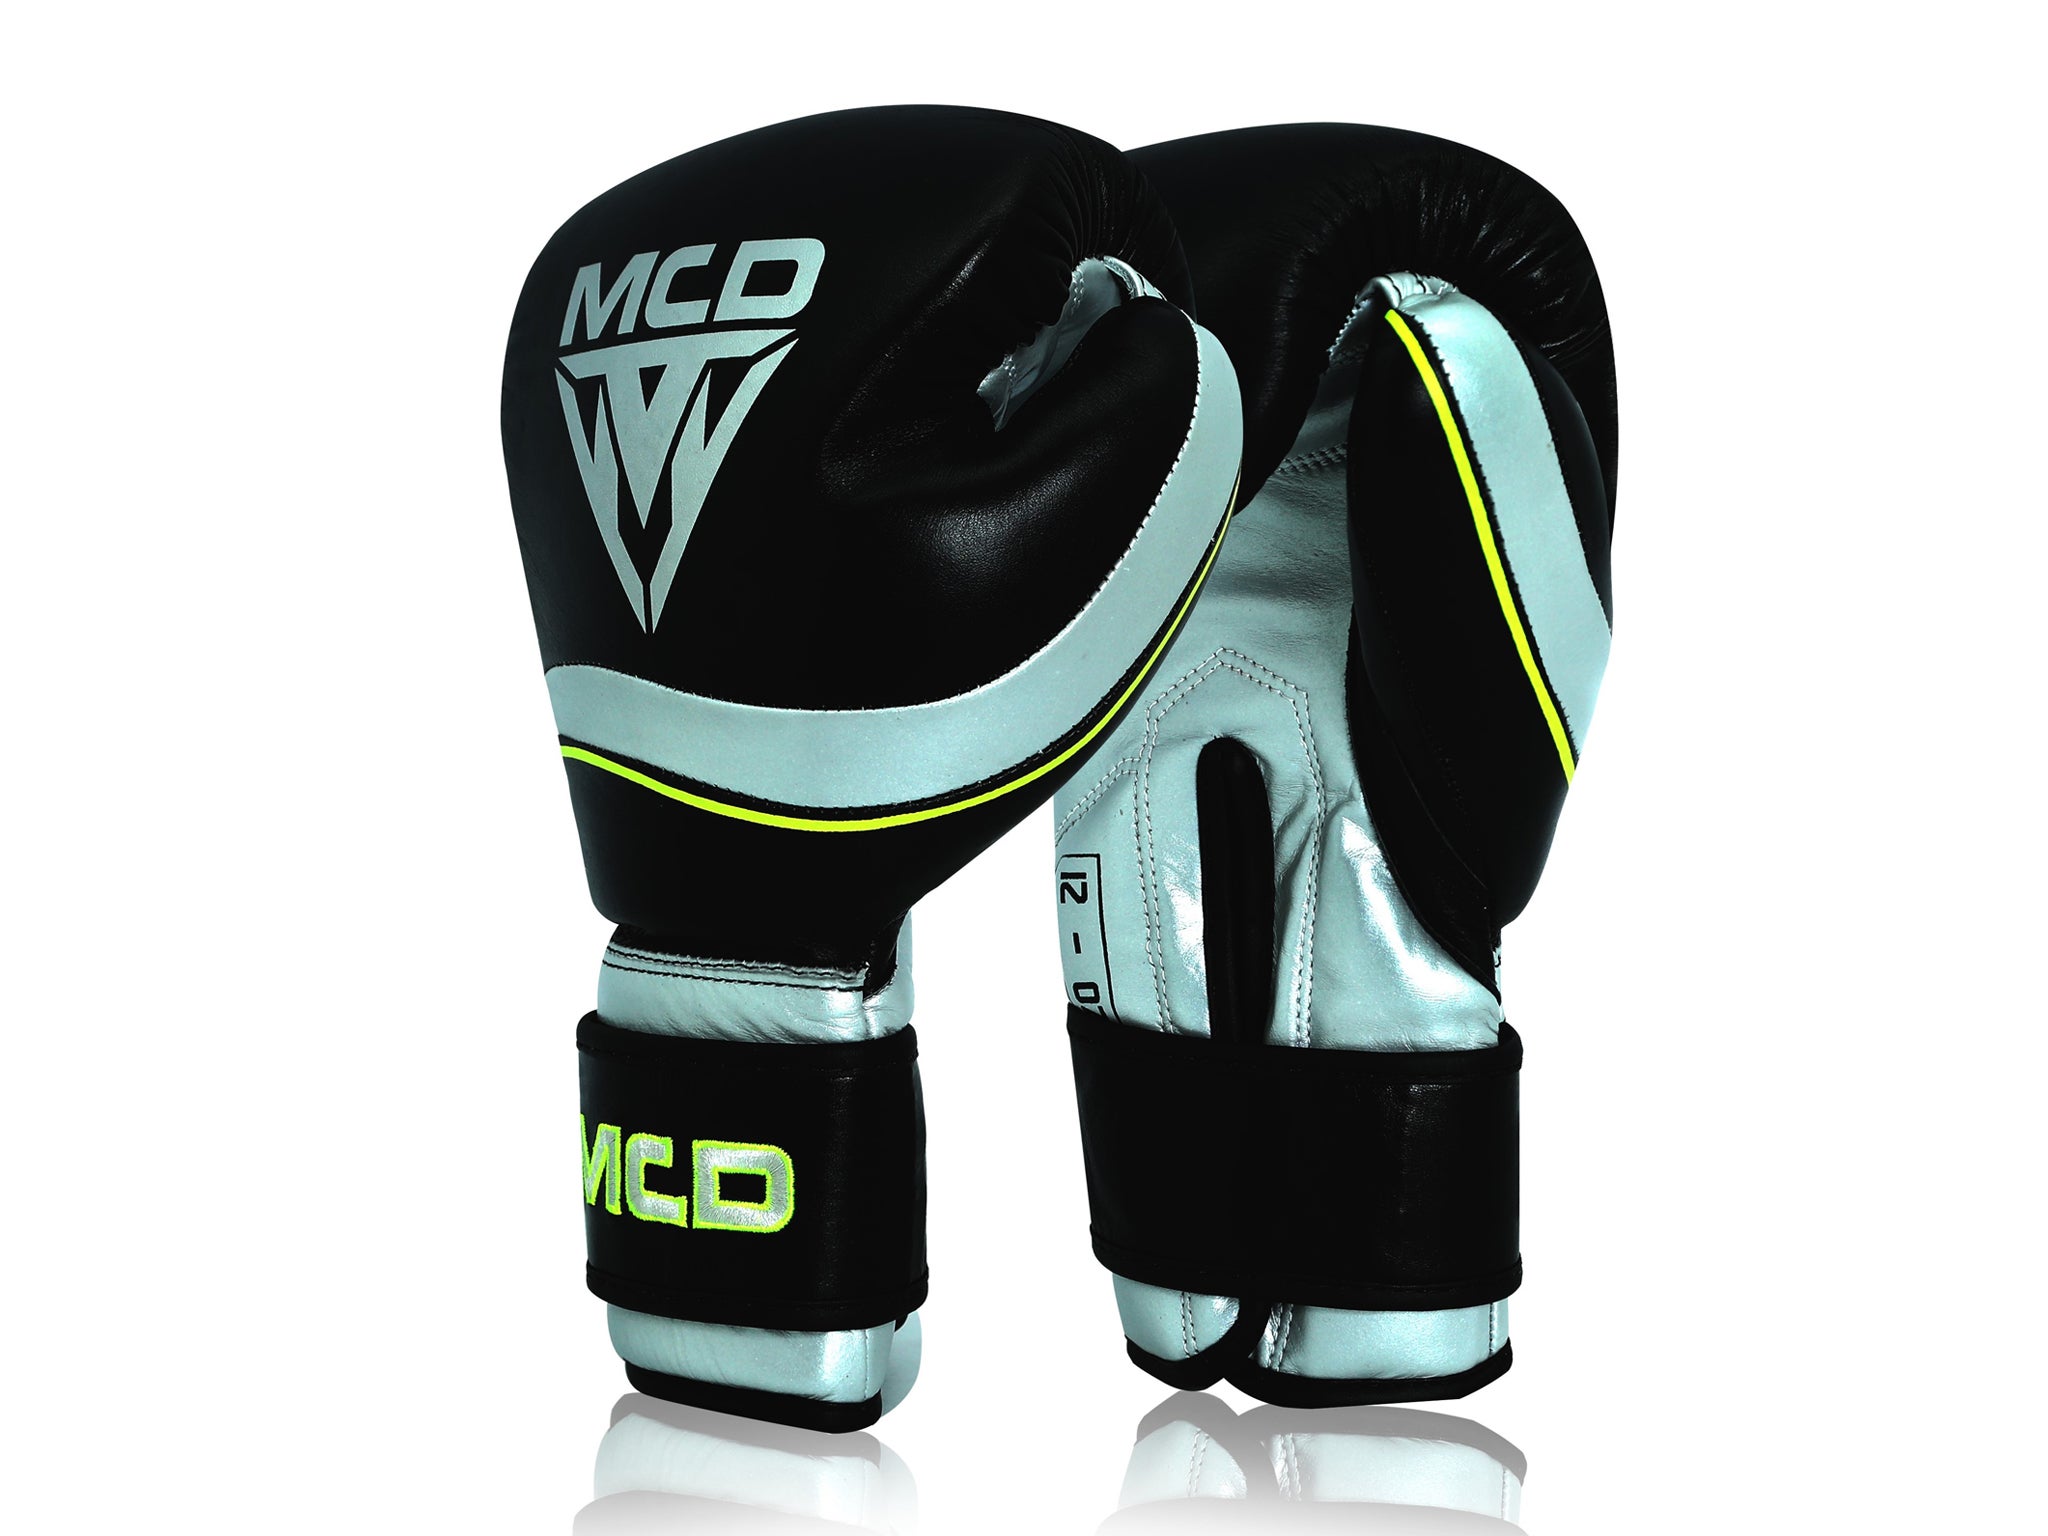 MCD Blast Boxing Gloves.jpg